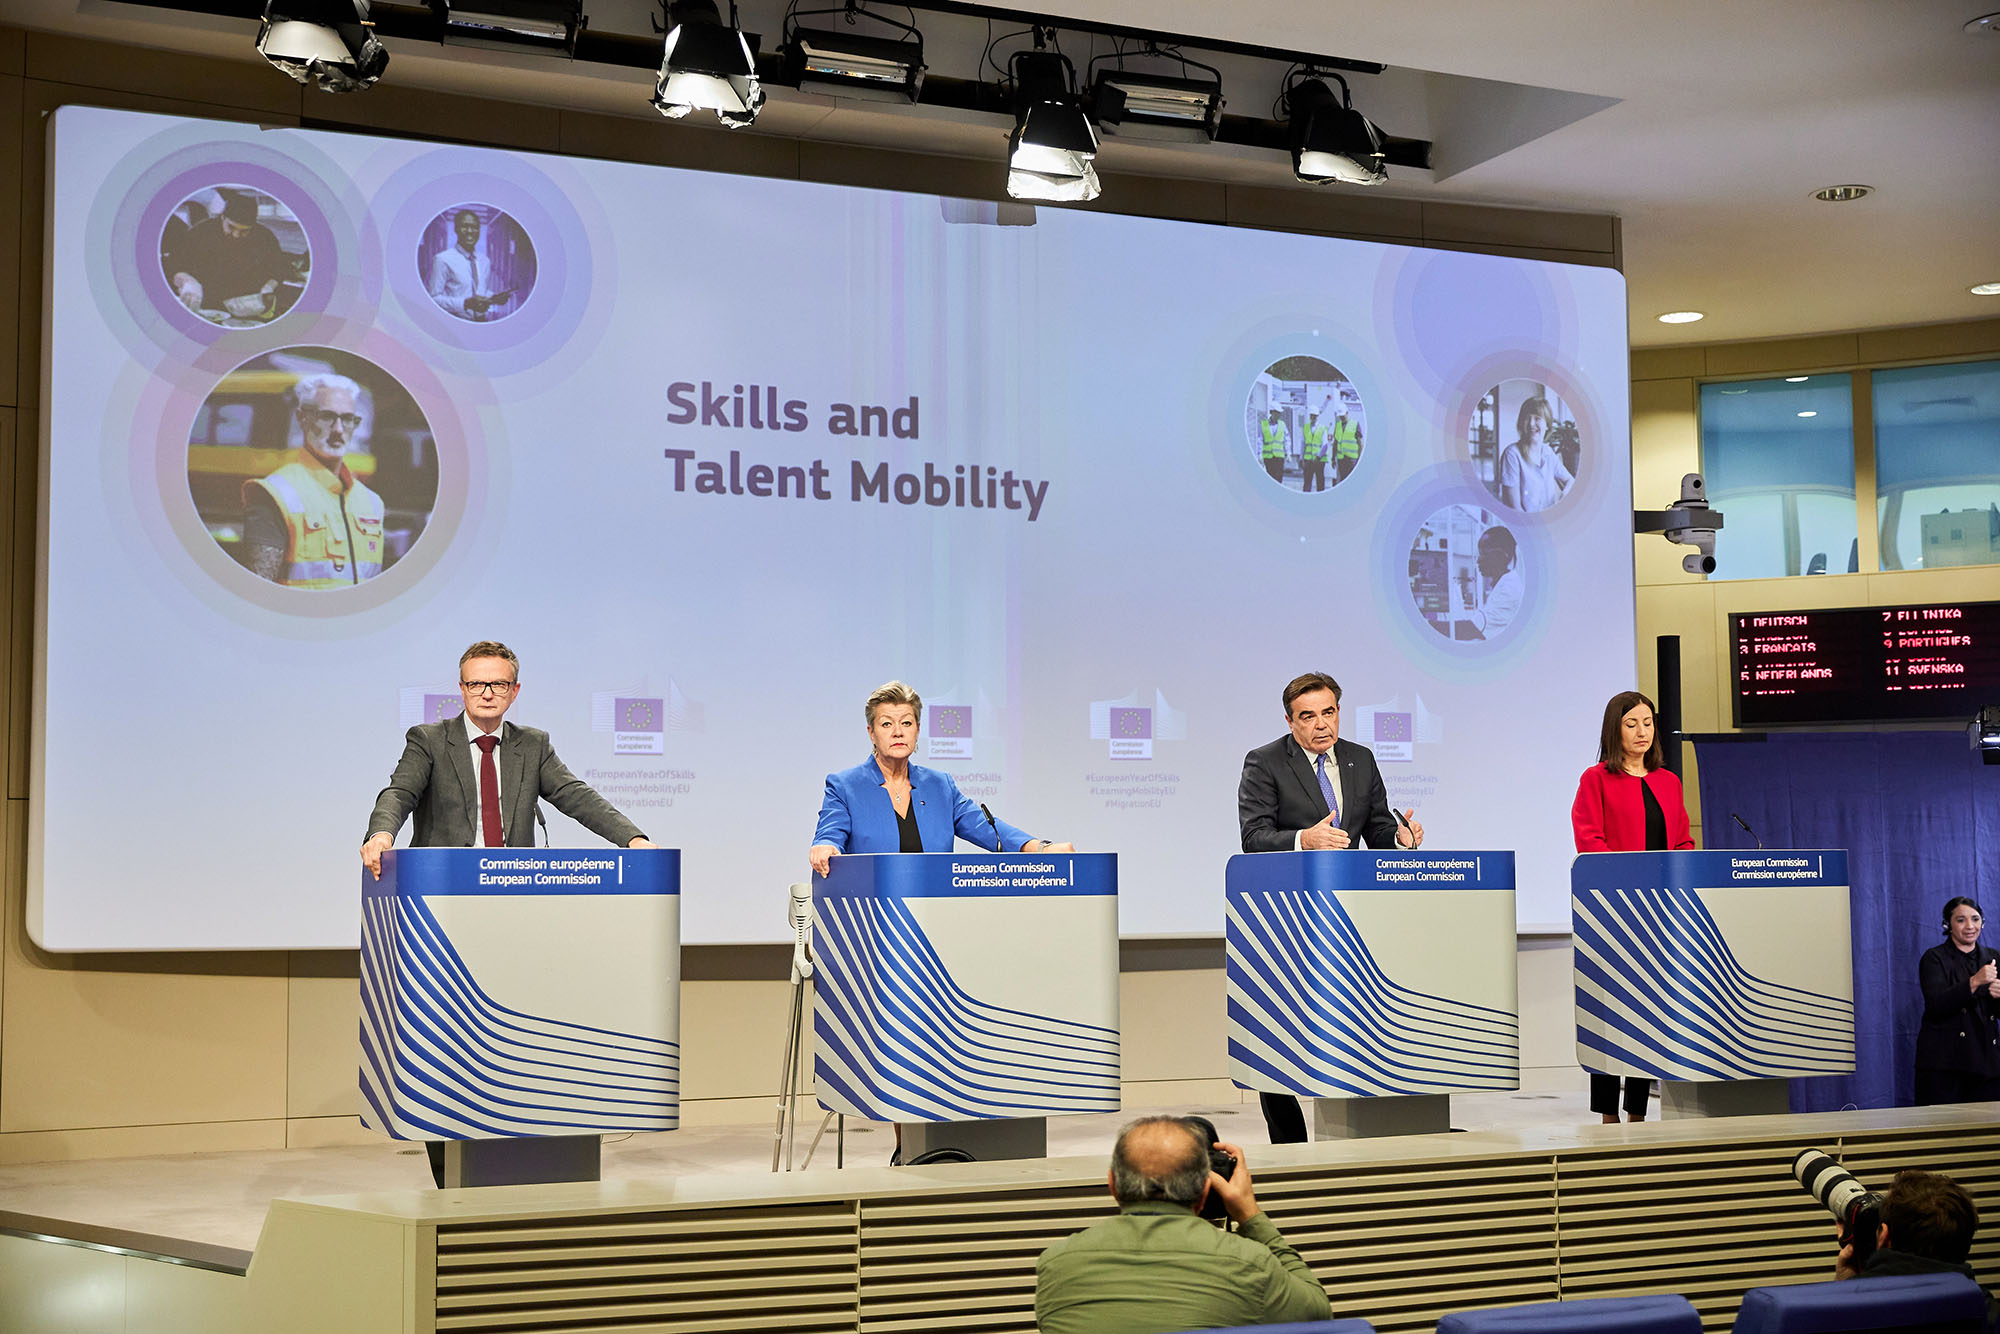 Komisja Europejska publikuje pakiet dotyczący umiejętności i mobilności talentów